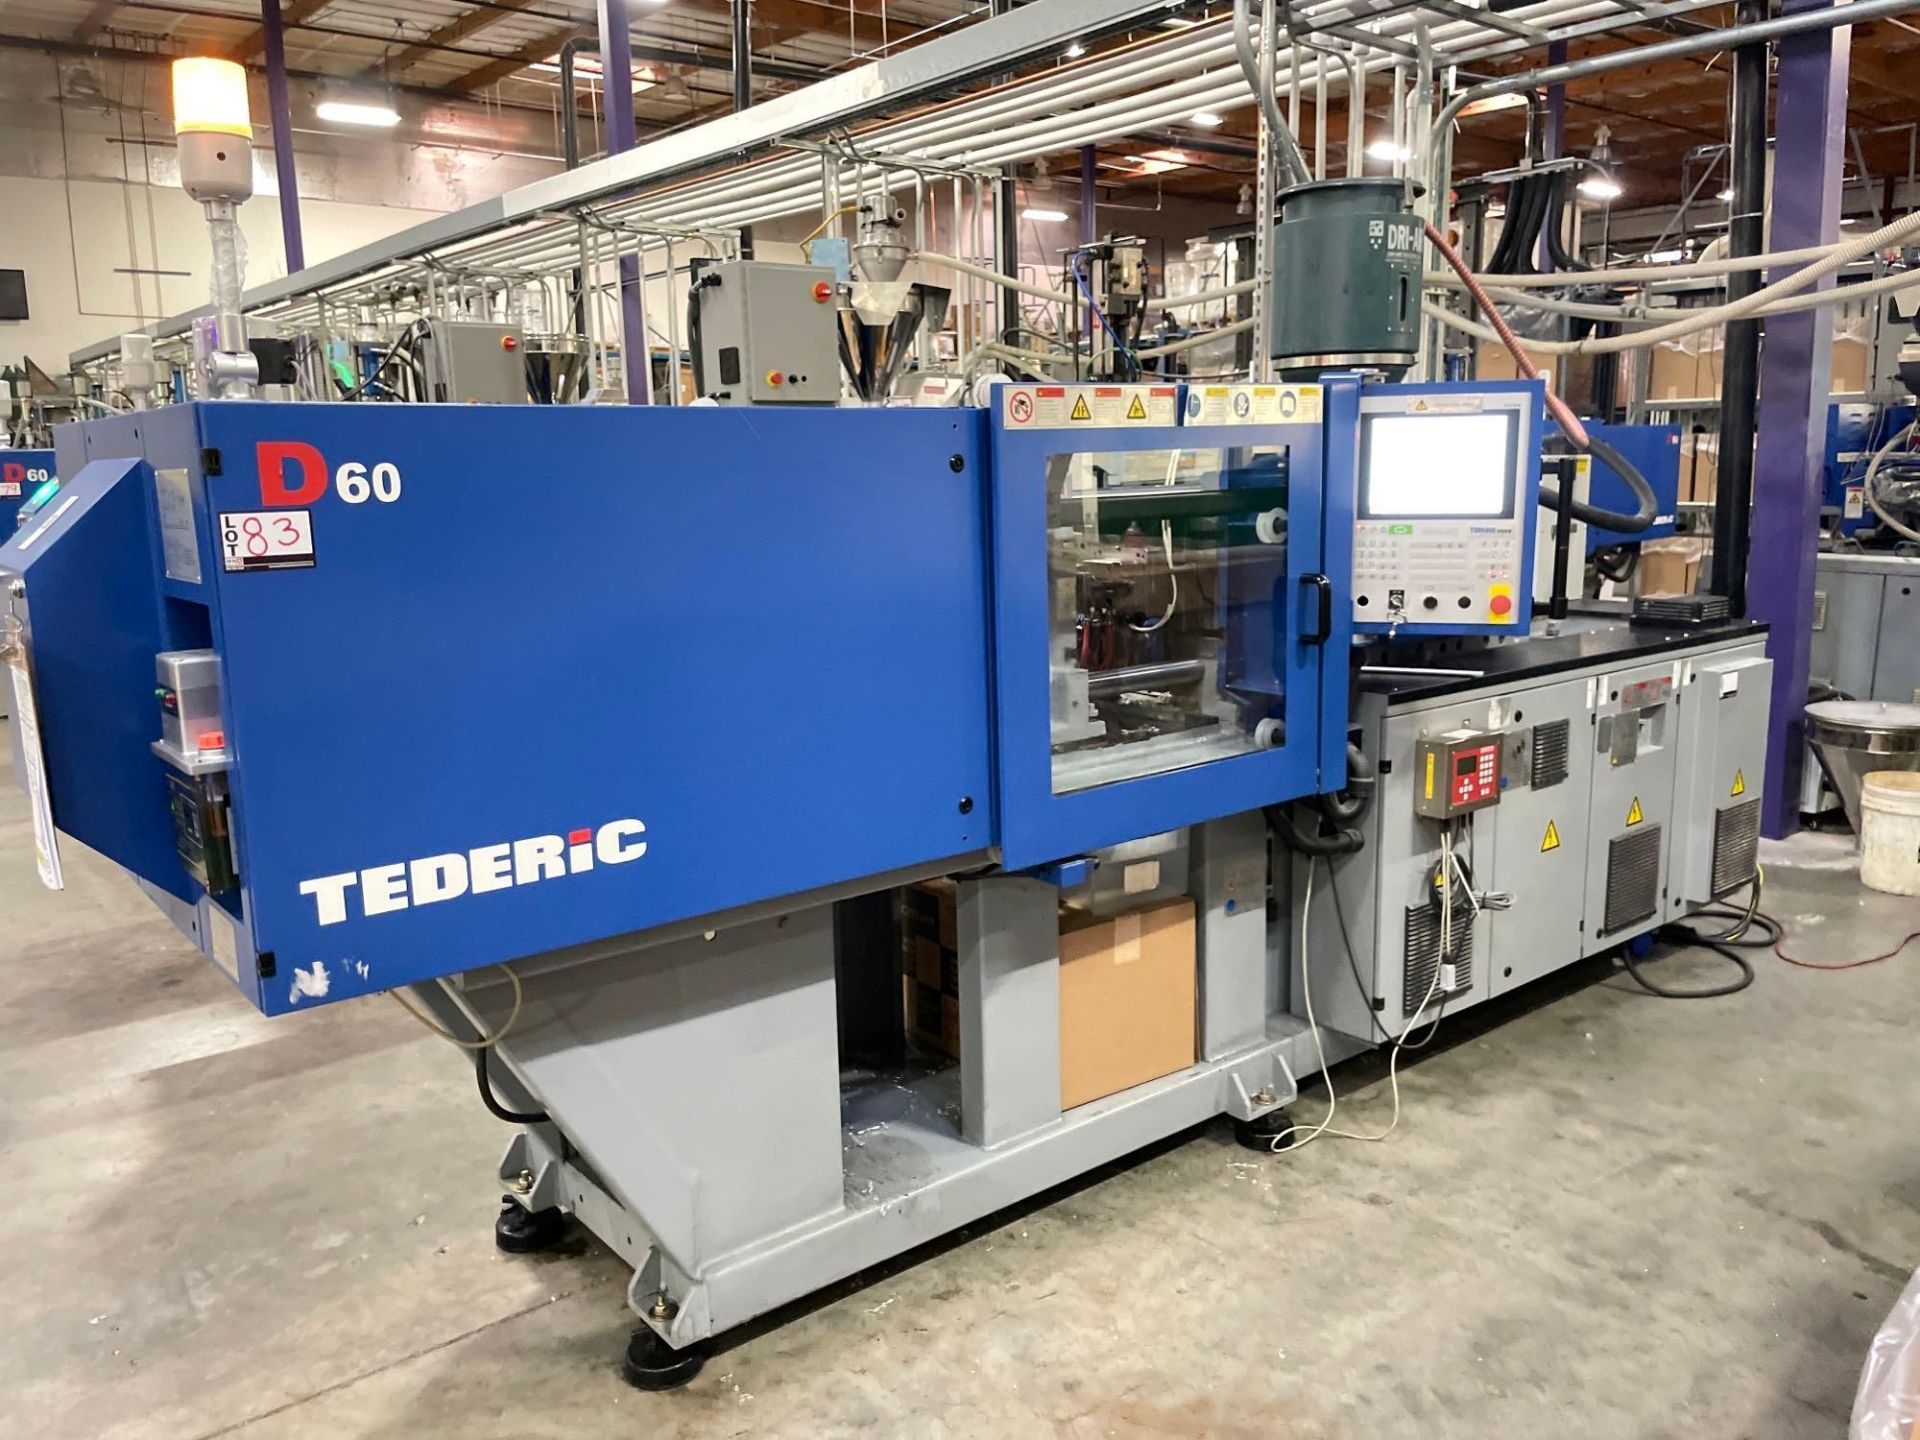 66 Ton Tederic D60 Plastic Injection Molder, Keba 12000, s/n T00800241, New 2019